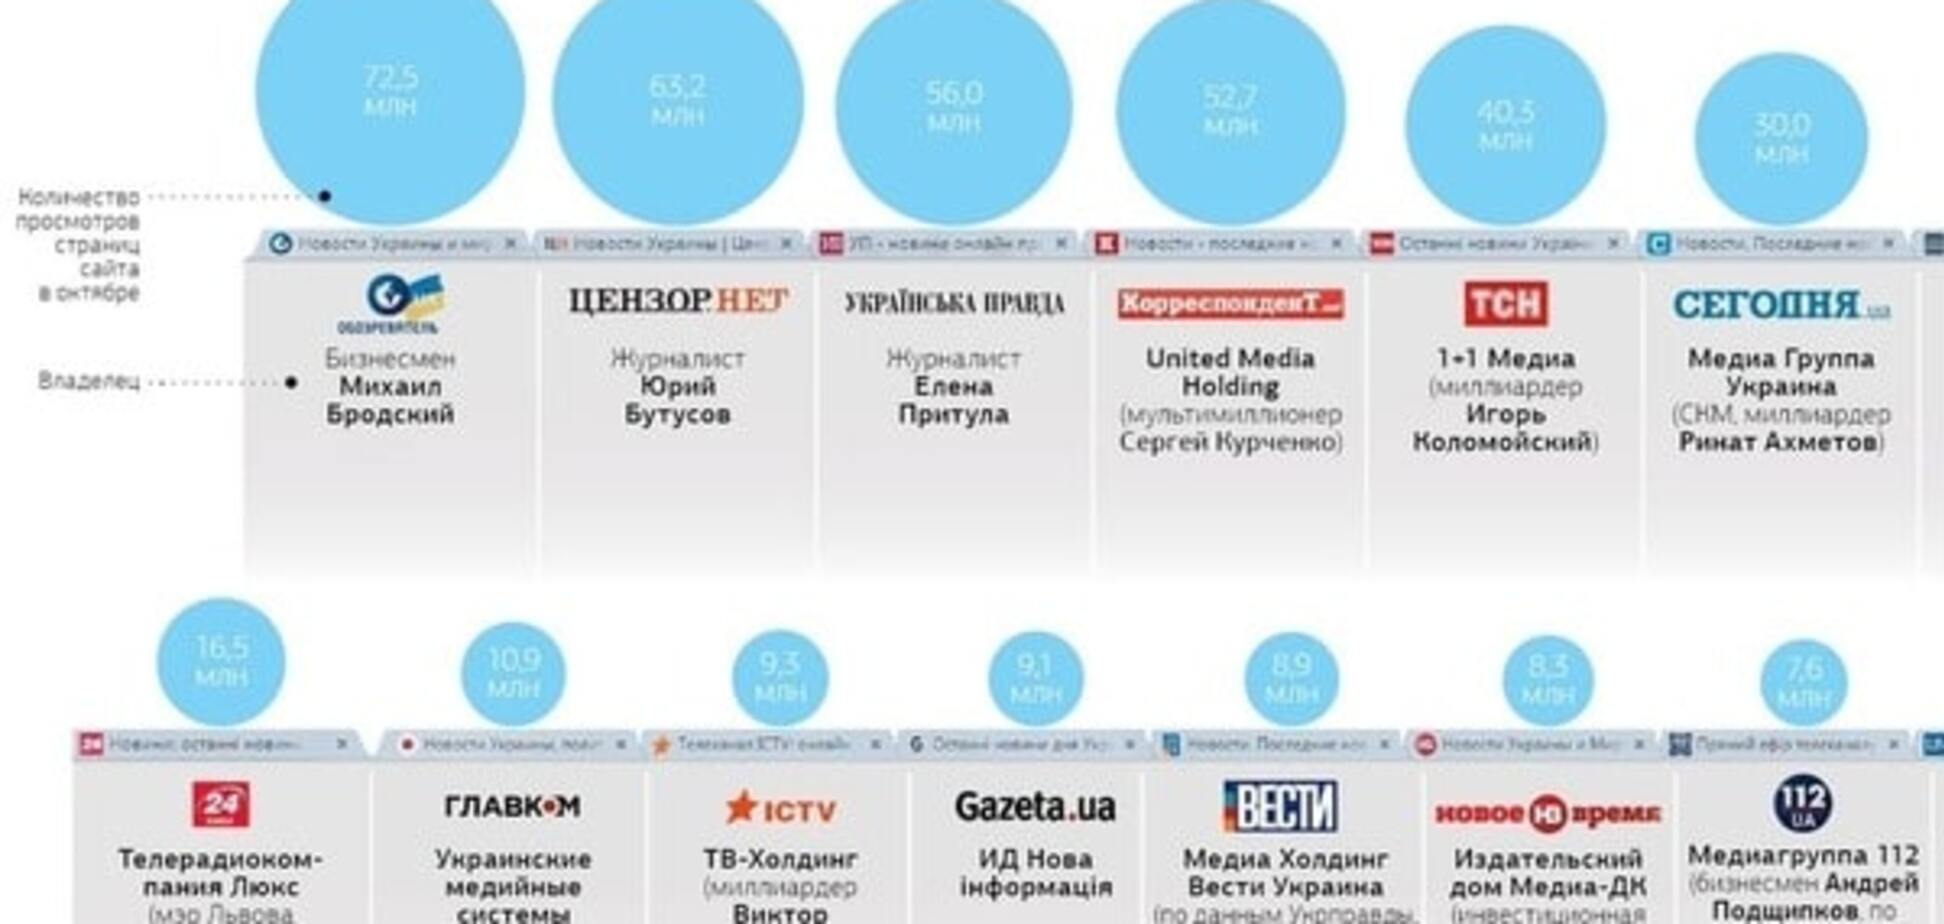 'Обозреватель' возглавил рейтинг самых популярных новостных сайтов Украины